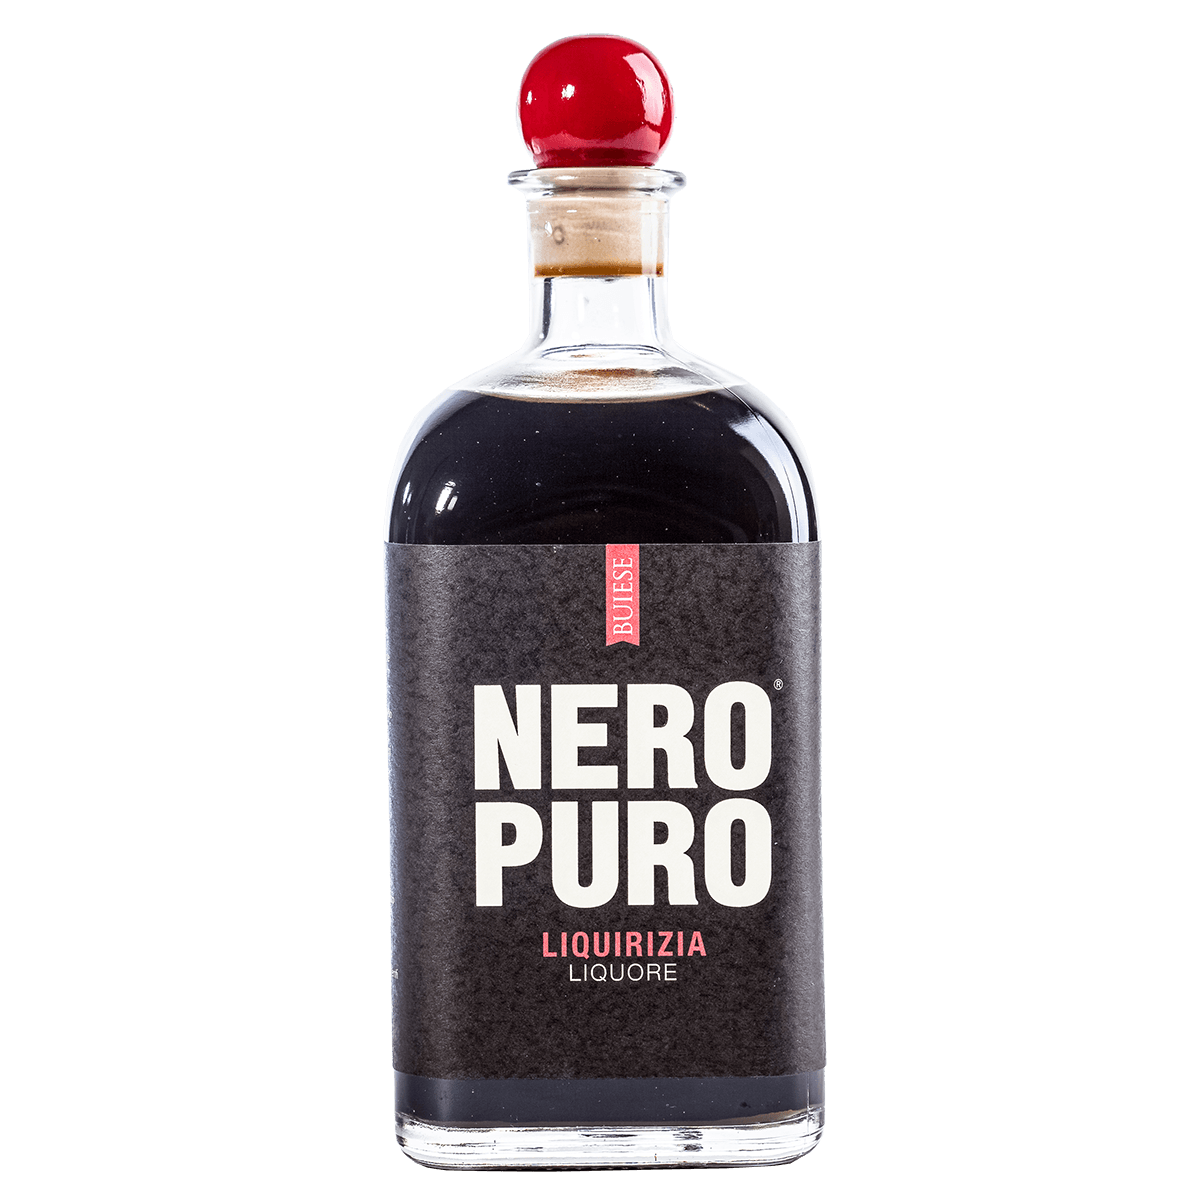 Nero Puro, liquore alla Liquirizia, 21%Vol., 700ml prezzi bassi